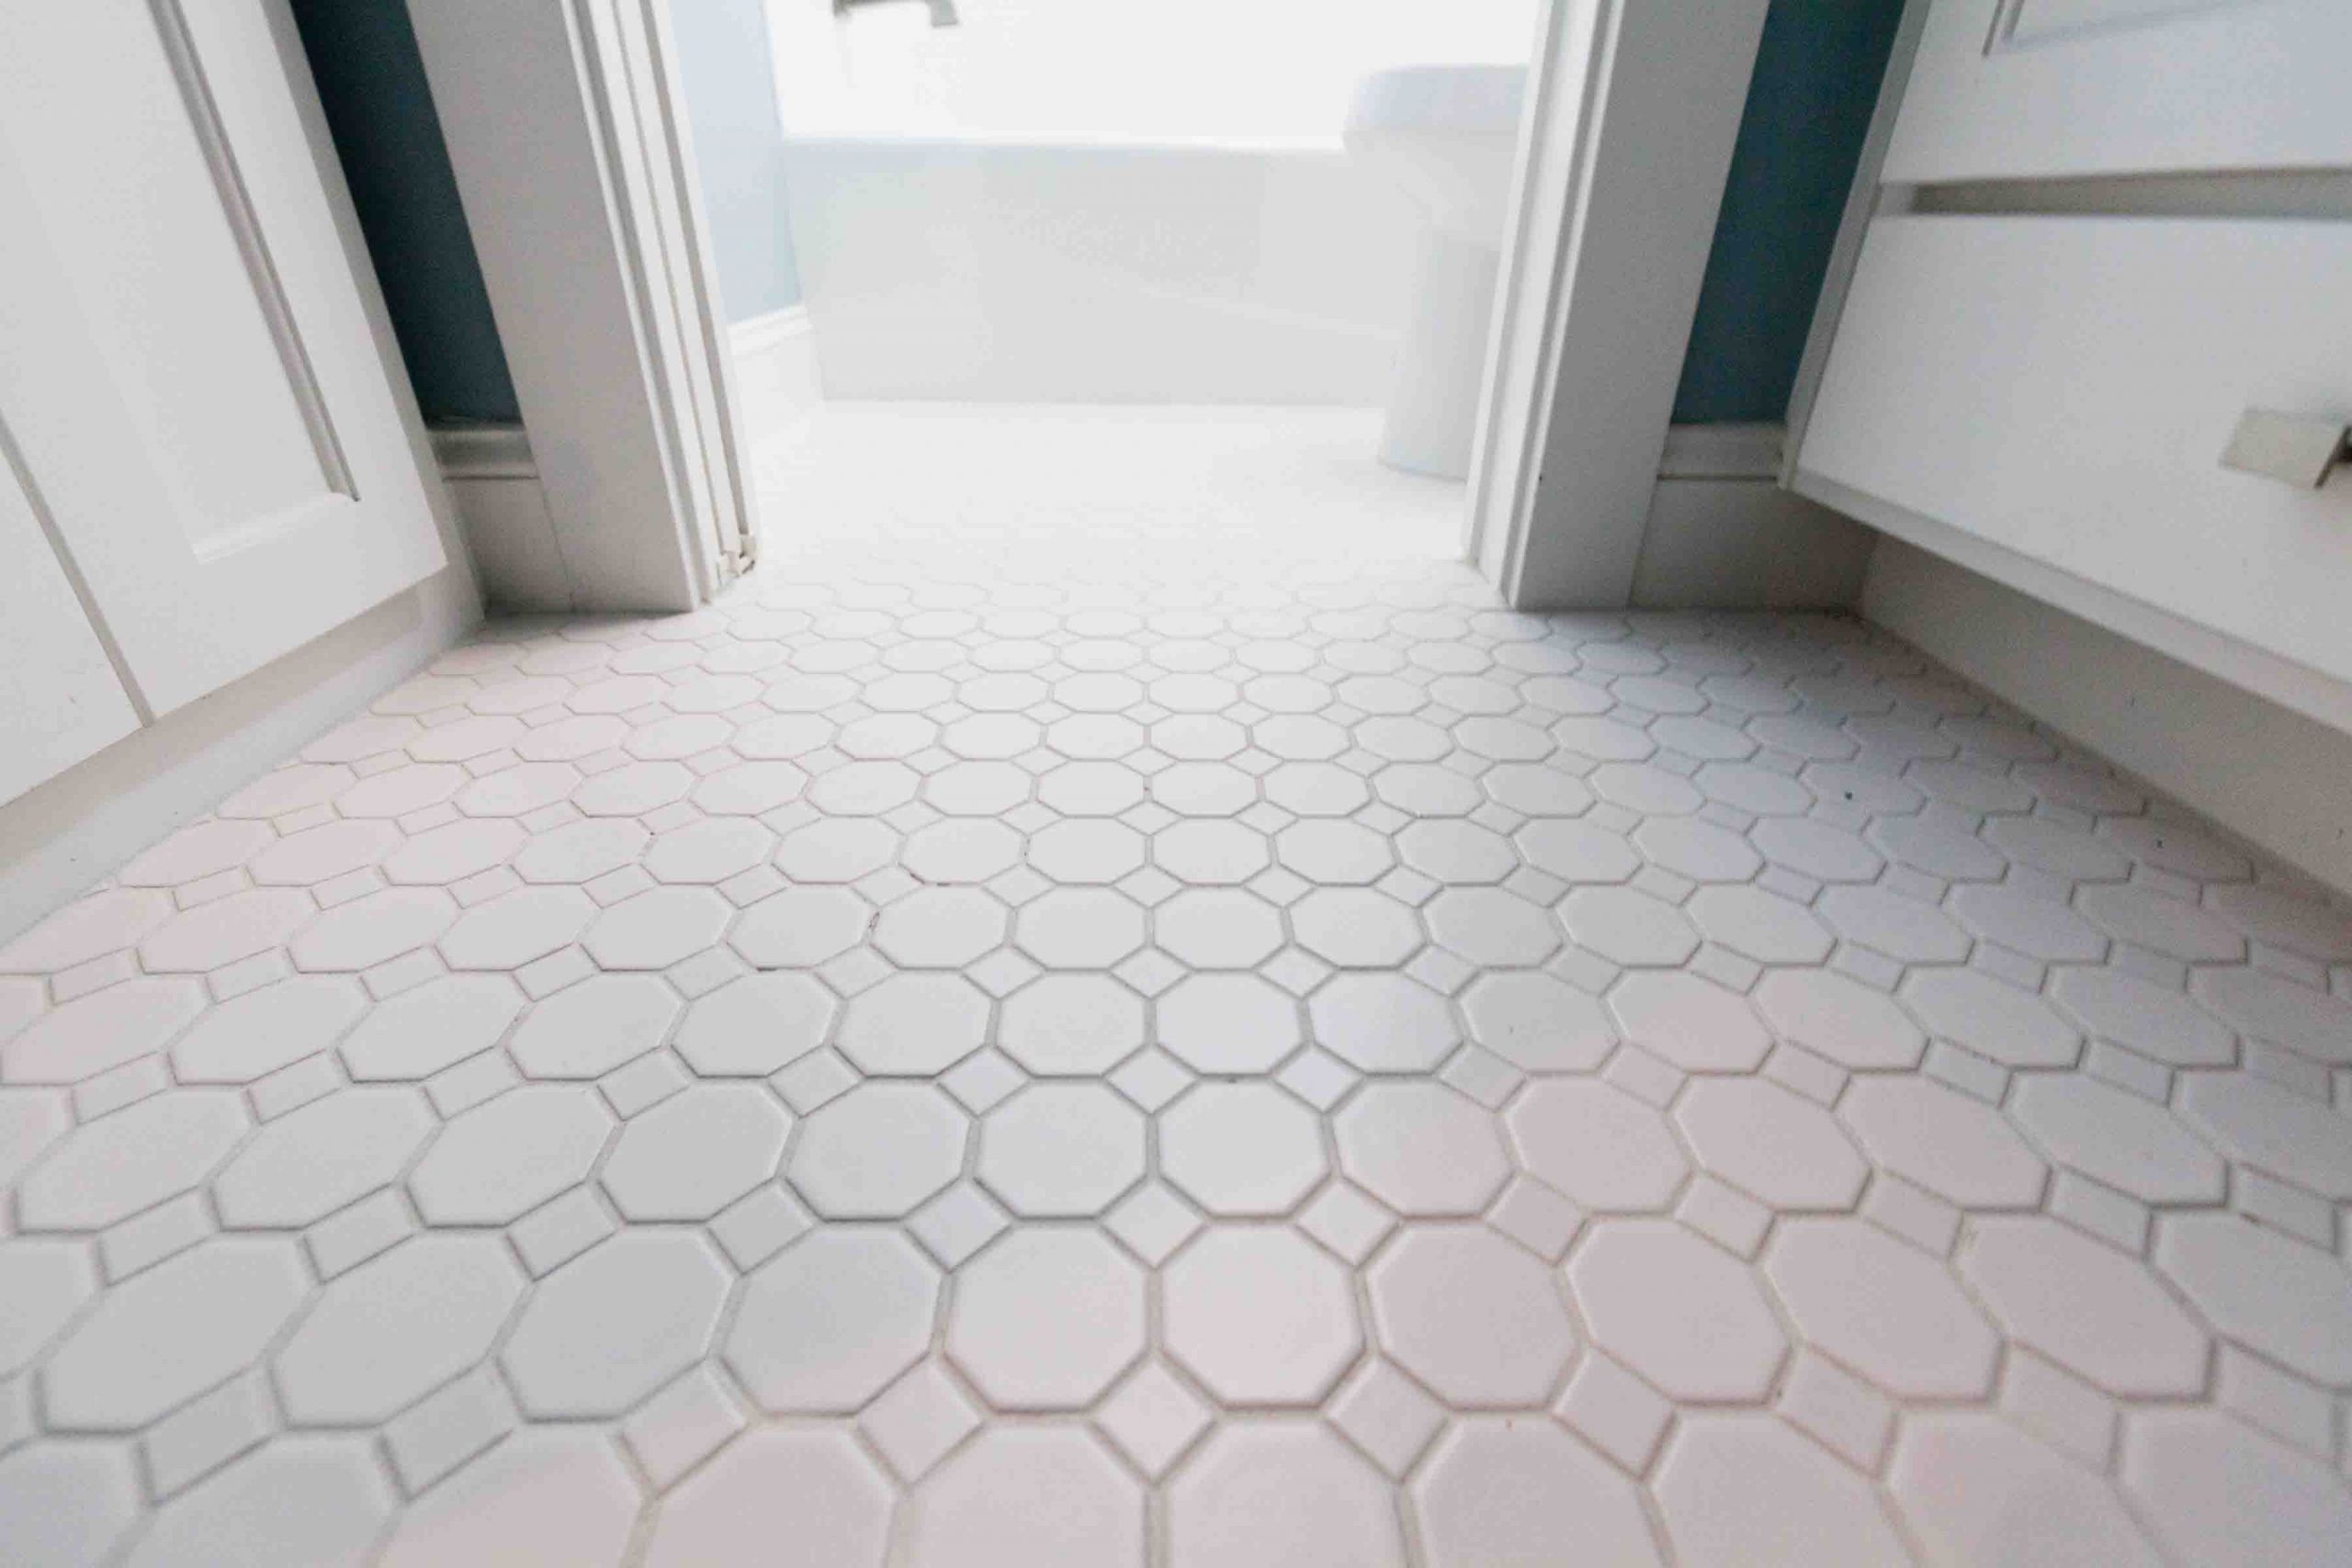 Octagon Tiles Bathroom Floor
 30 of octagon bathroom tile 2019